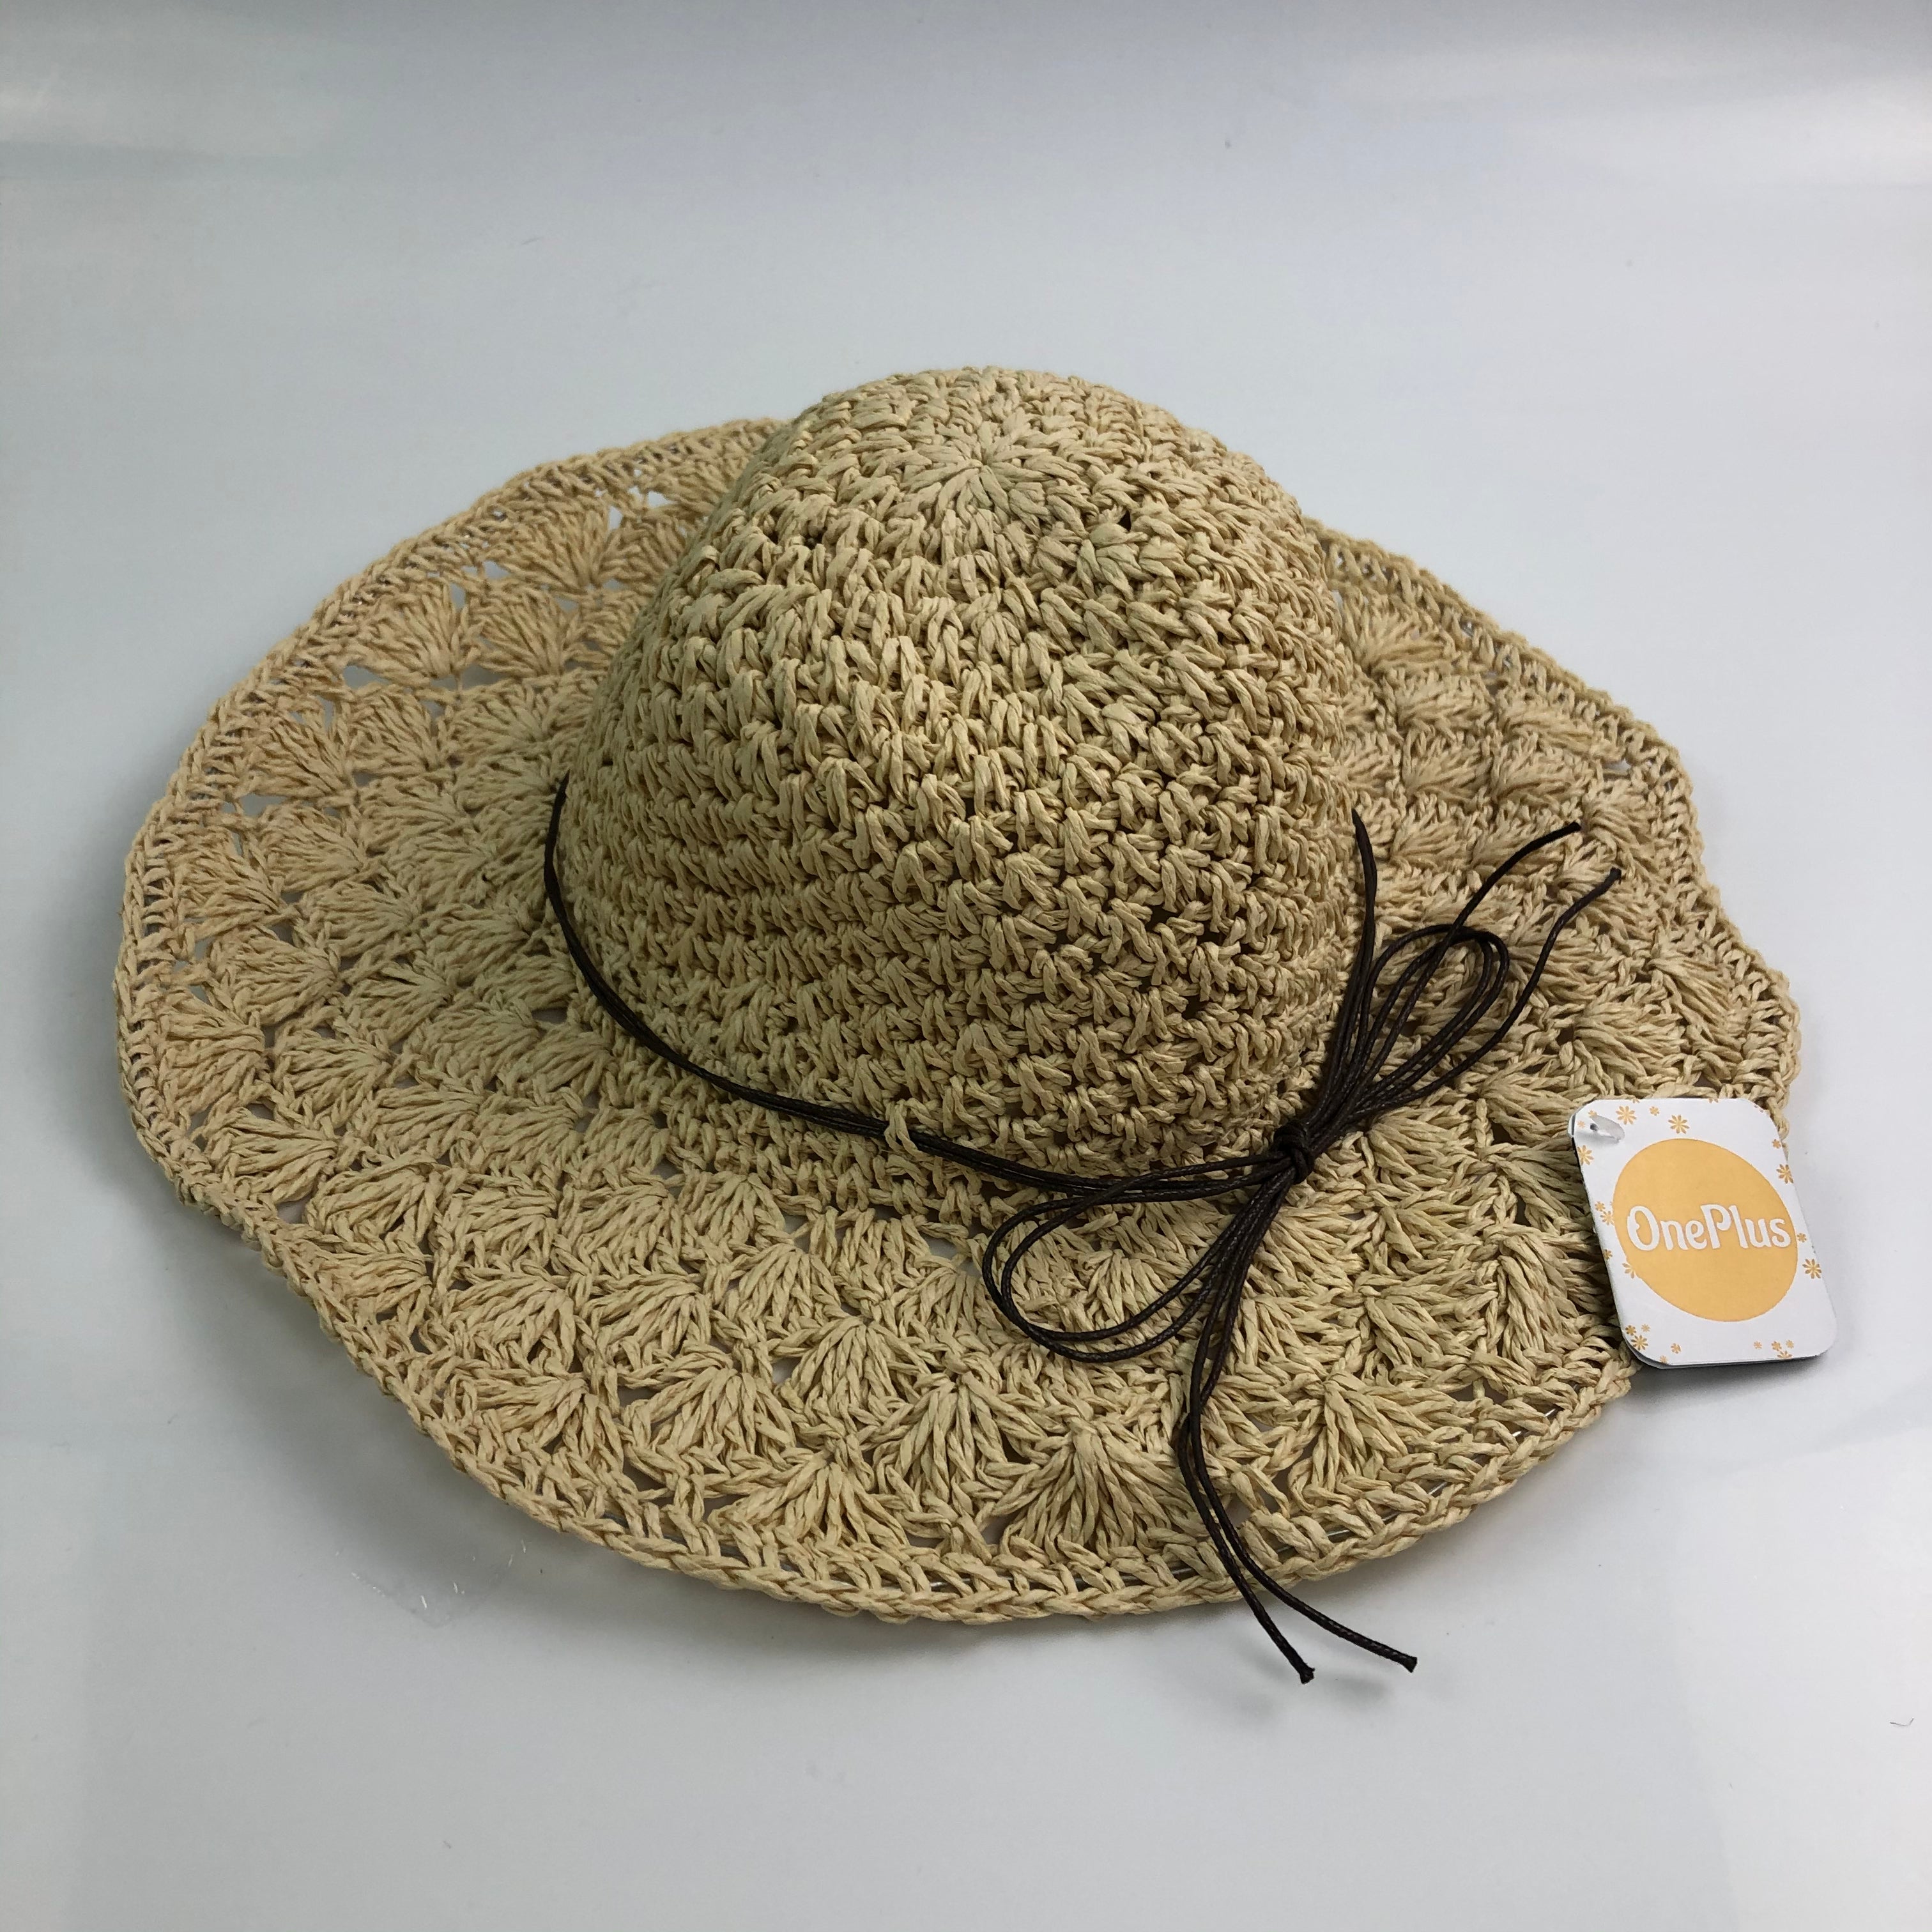 OnePlus Summer Beach Sun Hats - Glow Guards